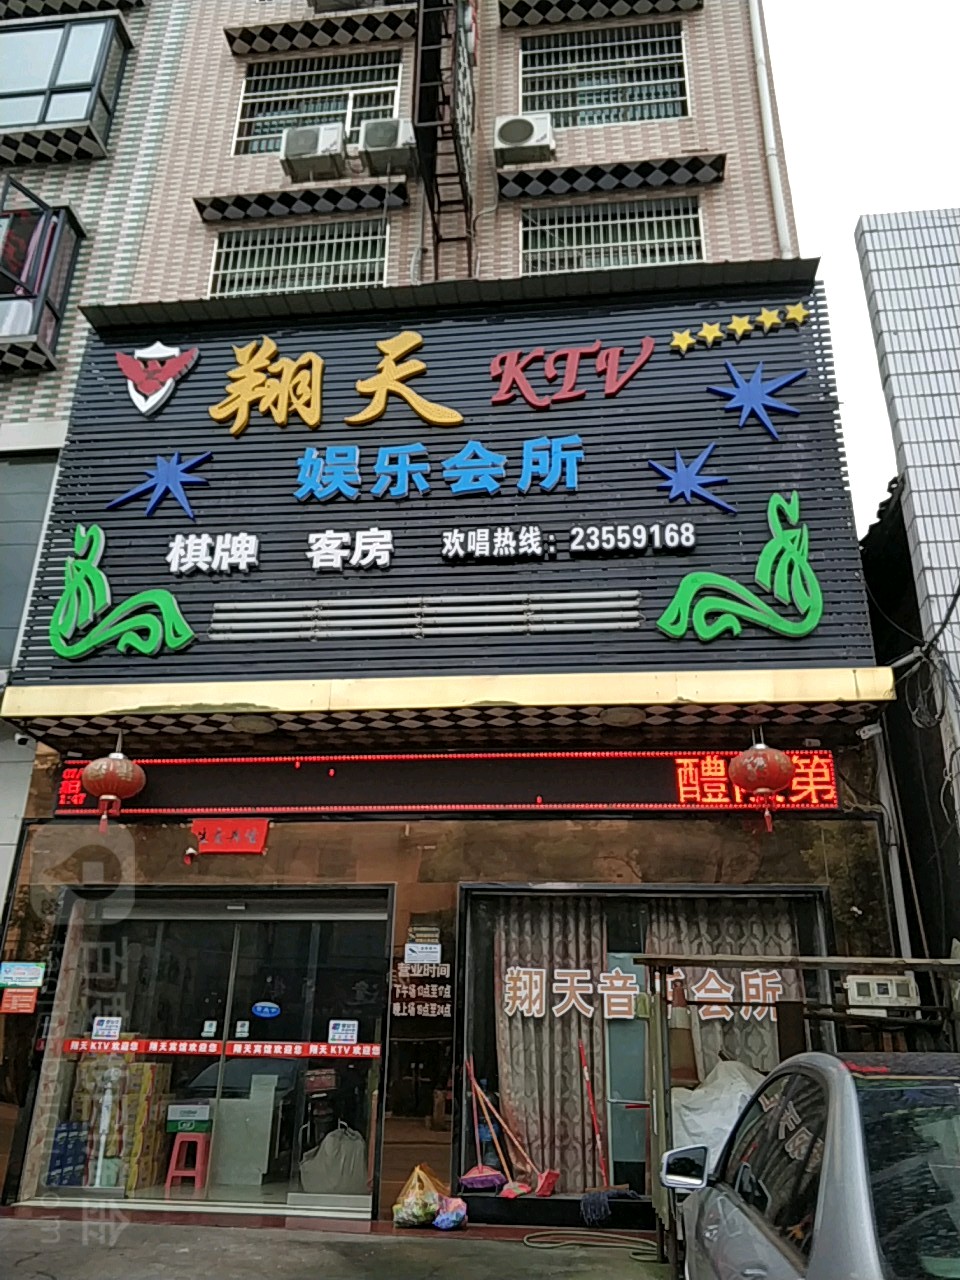 翔天KTV娱乐会所